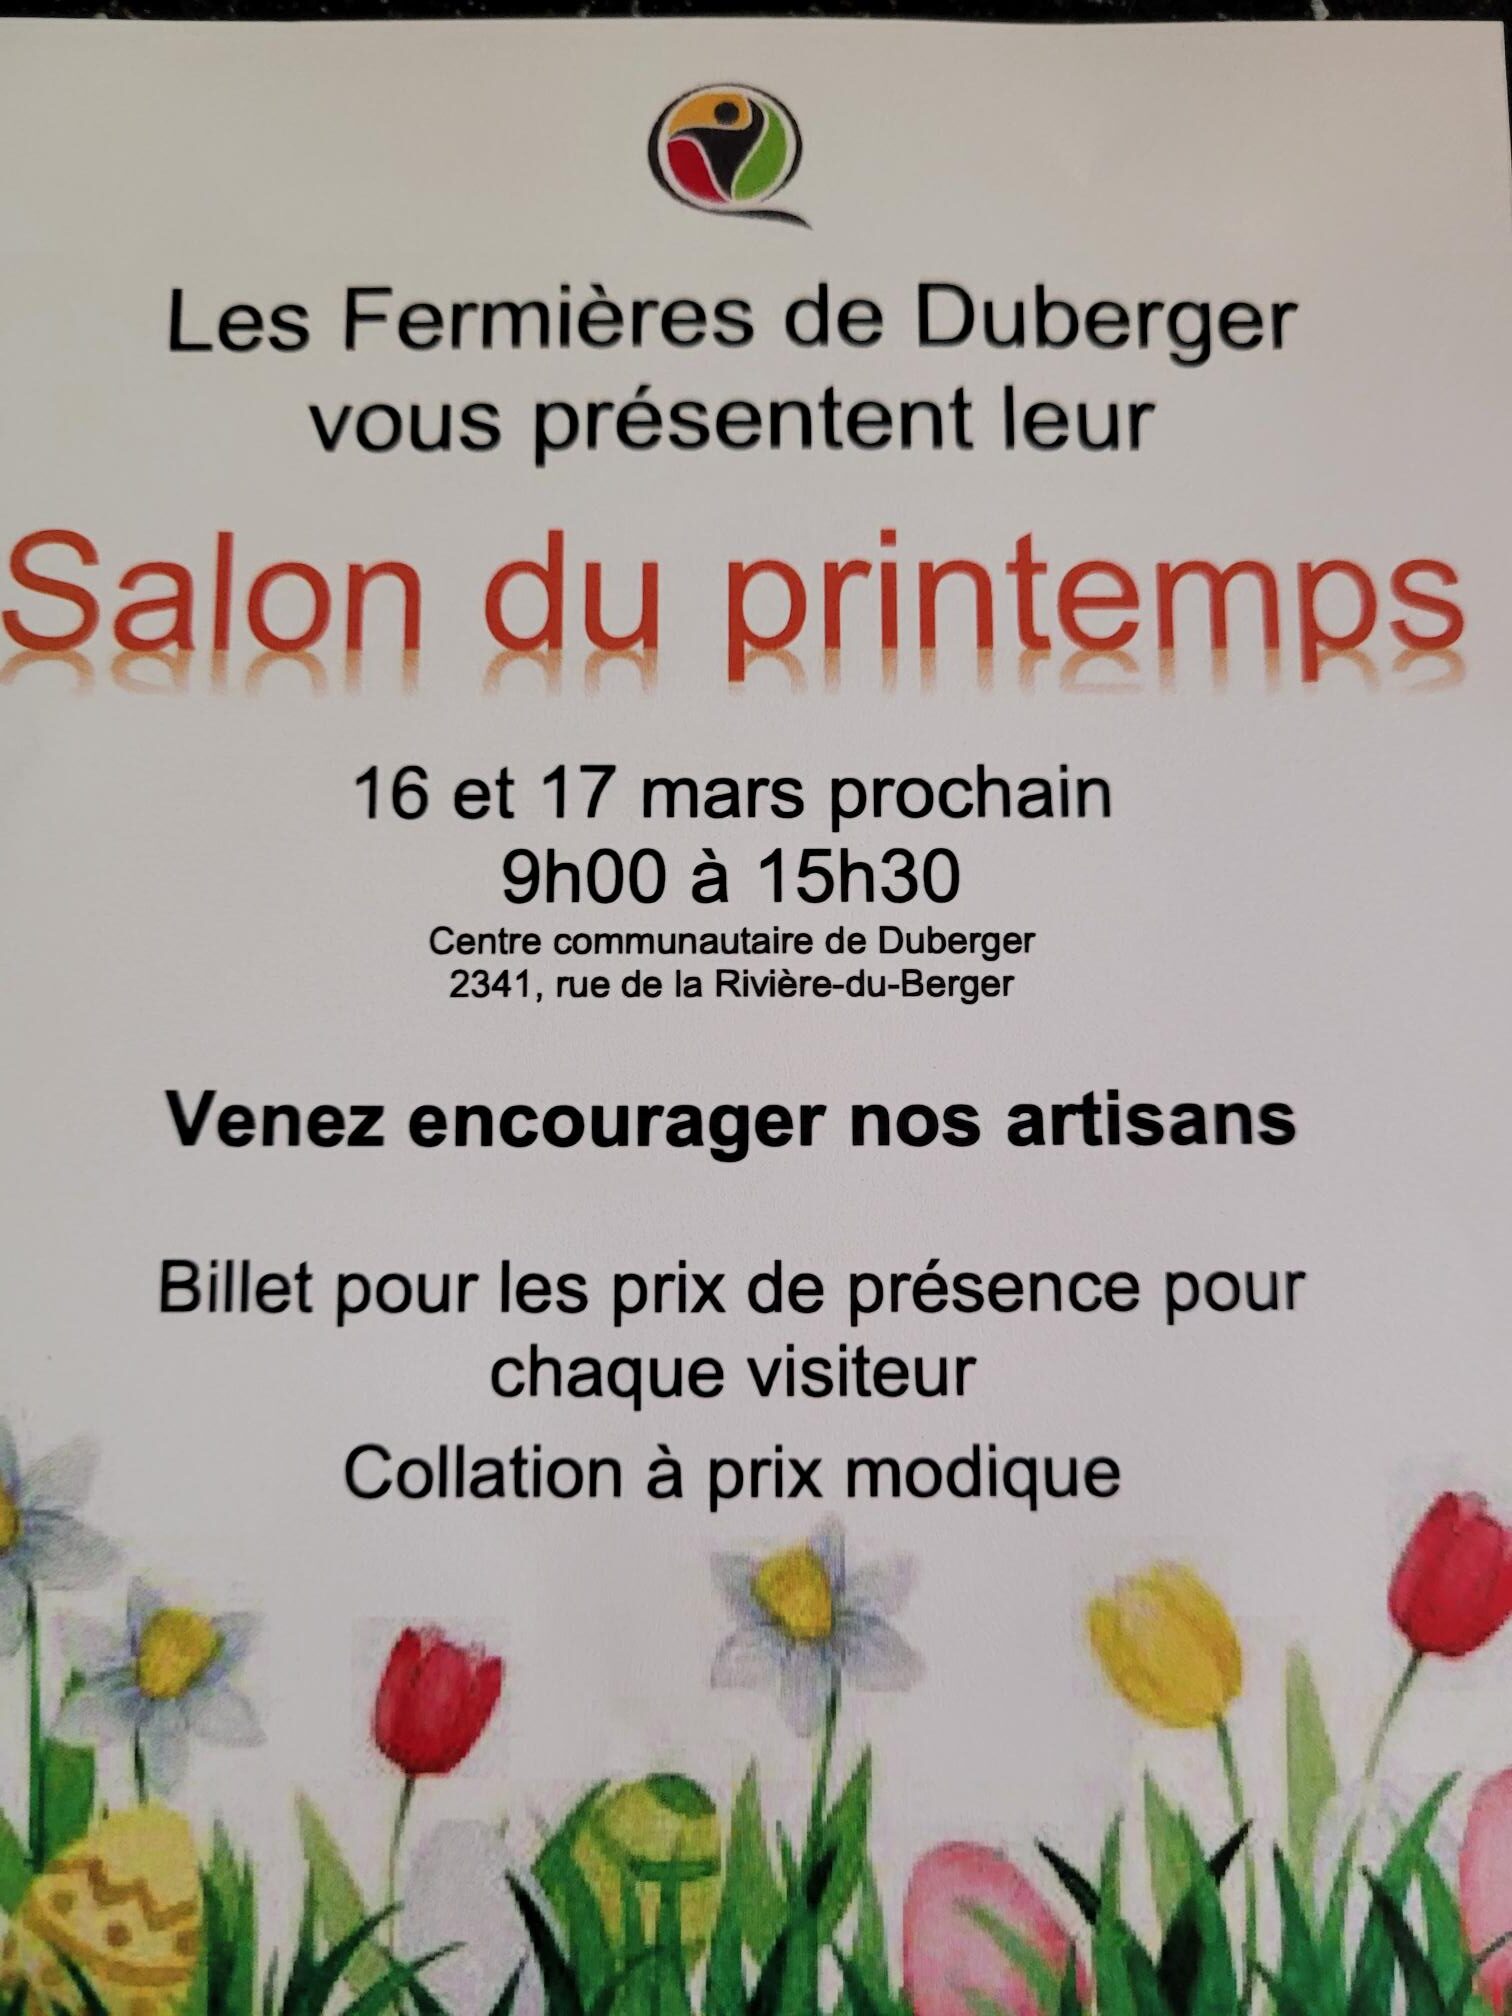 Salon du printemps – Cercle de Fermières de Duberger